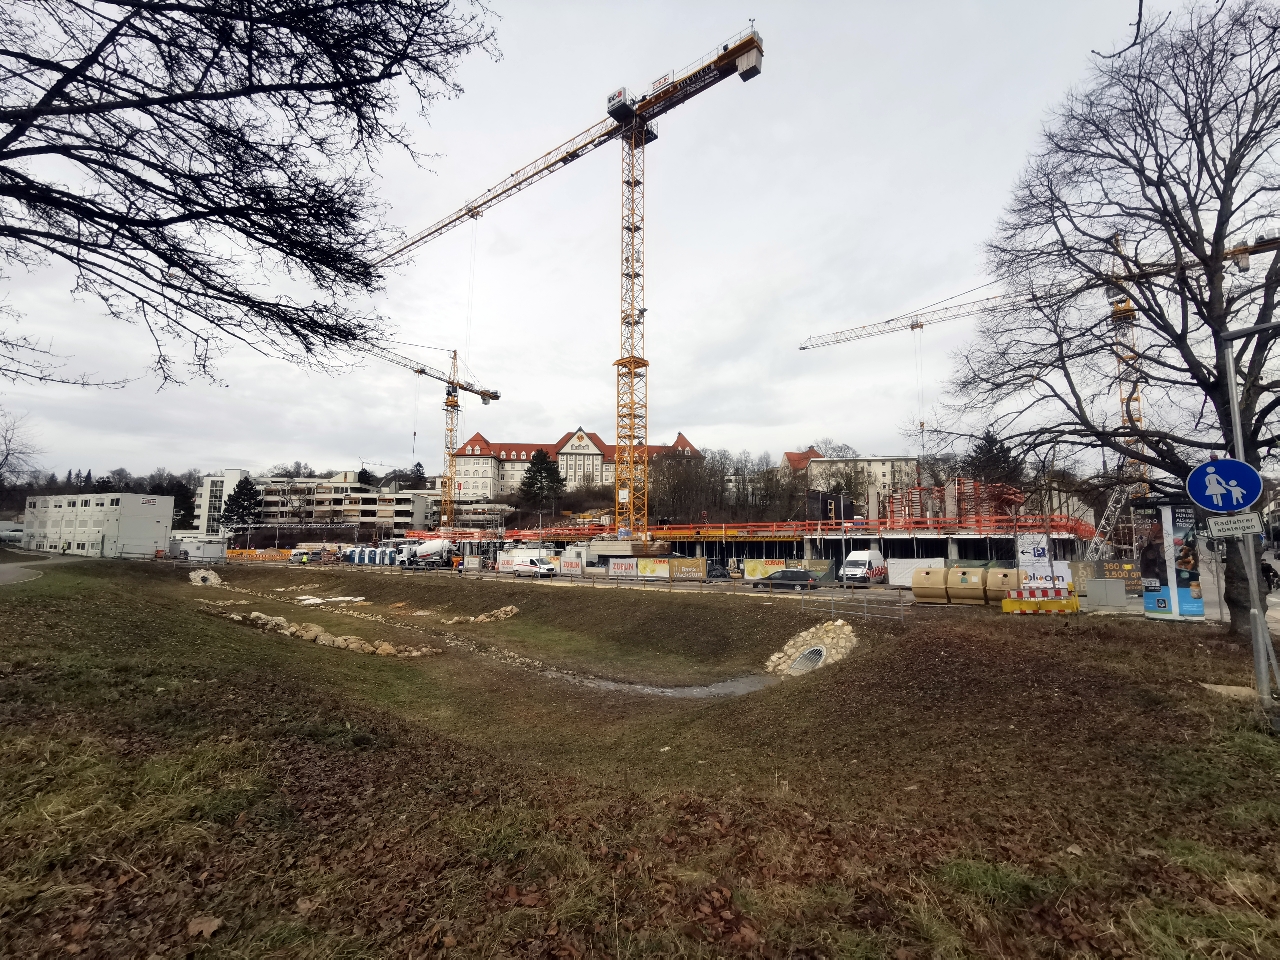 Ulm, Quartier Safranberg. Februar 2021